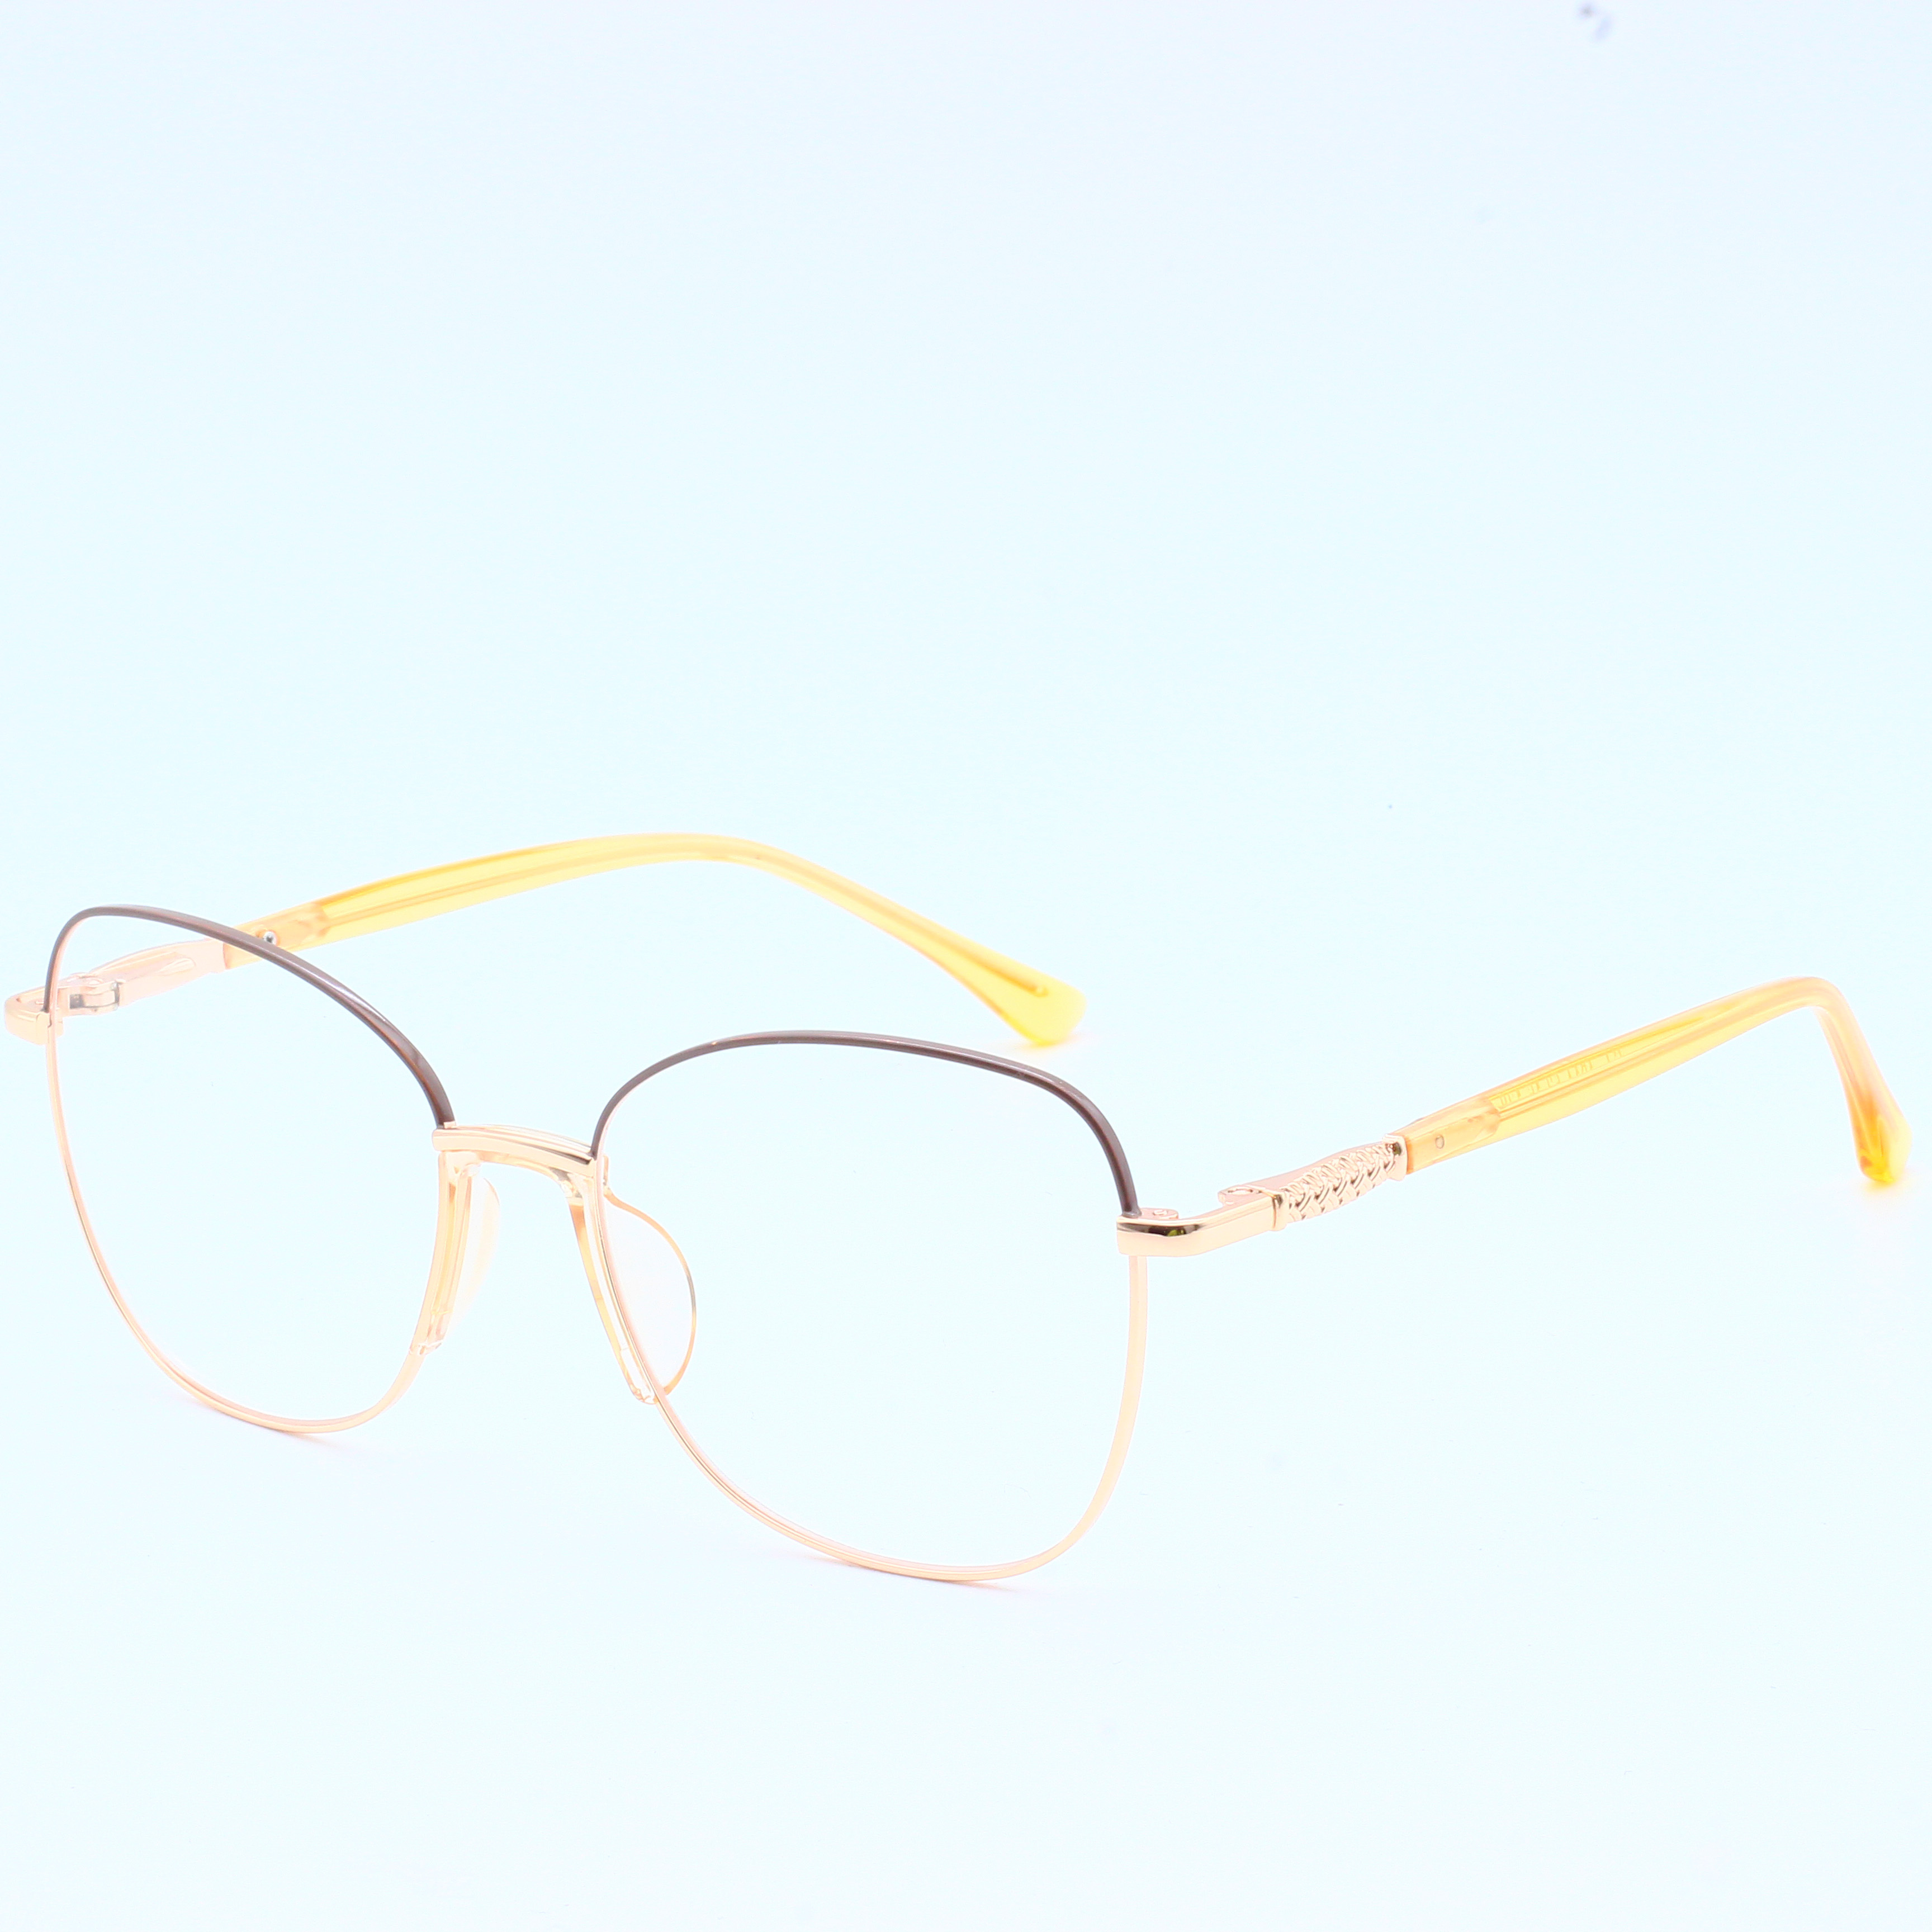 Designer Brand Metal Wholesale Eyeglasses River Optical Frame (7)